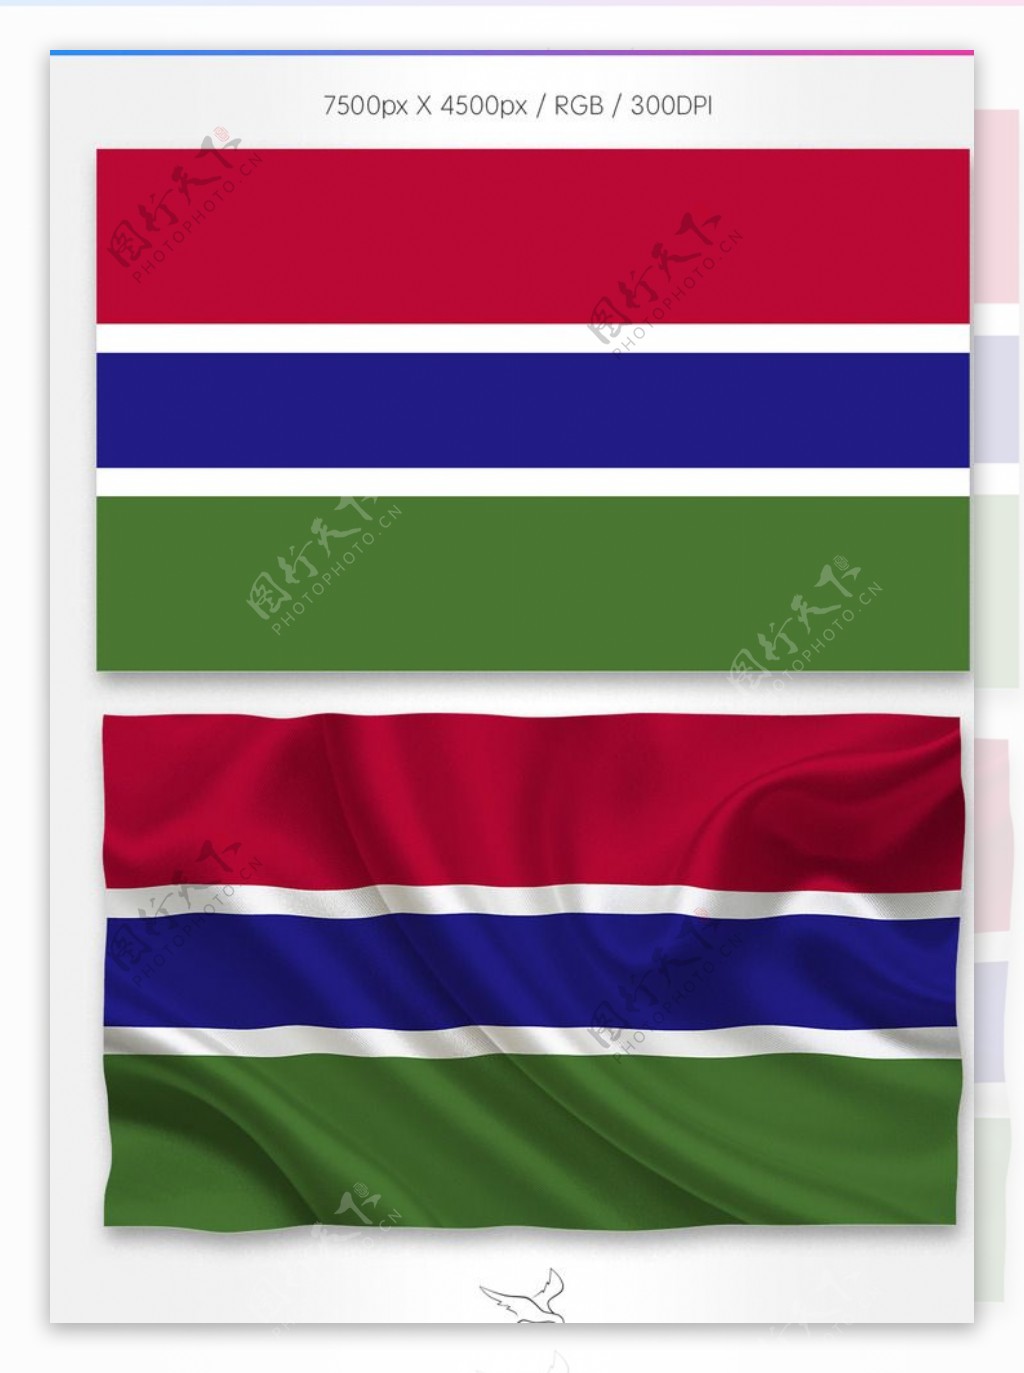 冈比亚国旗分层psd